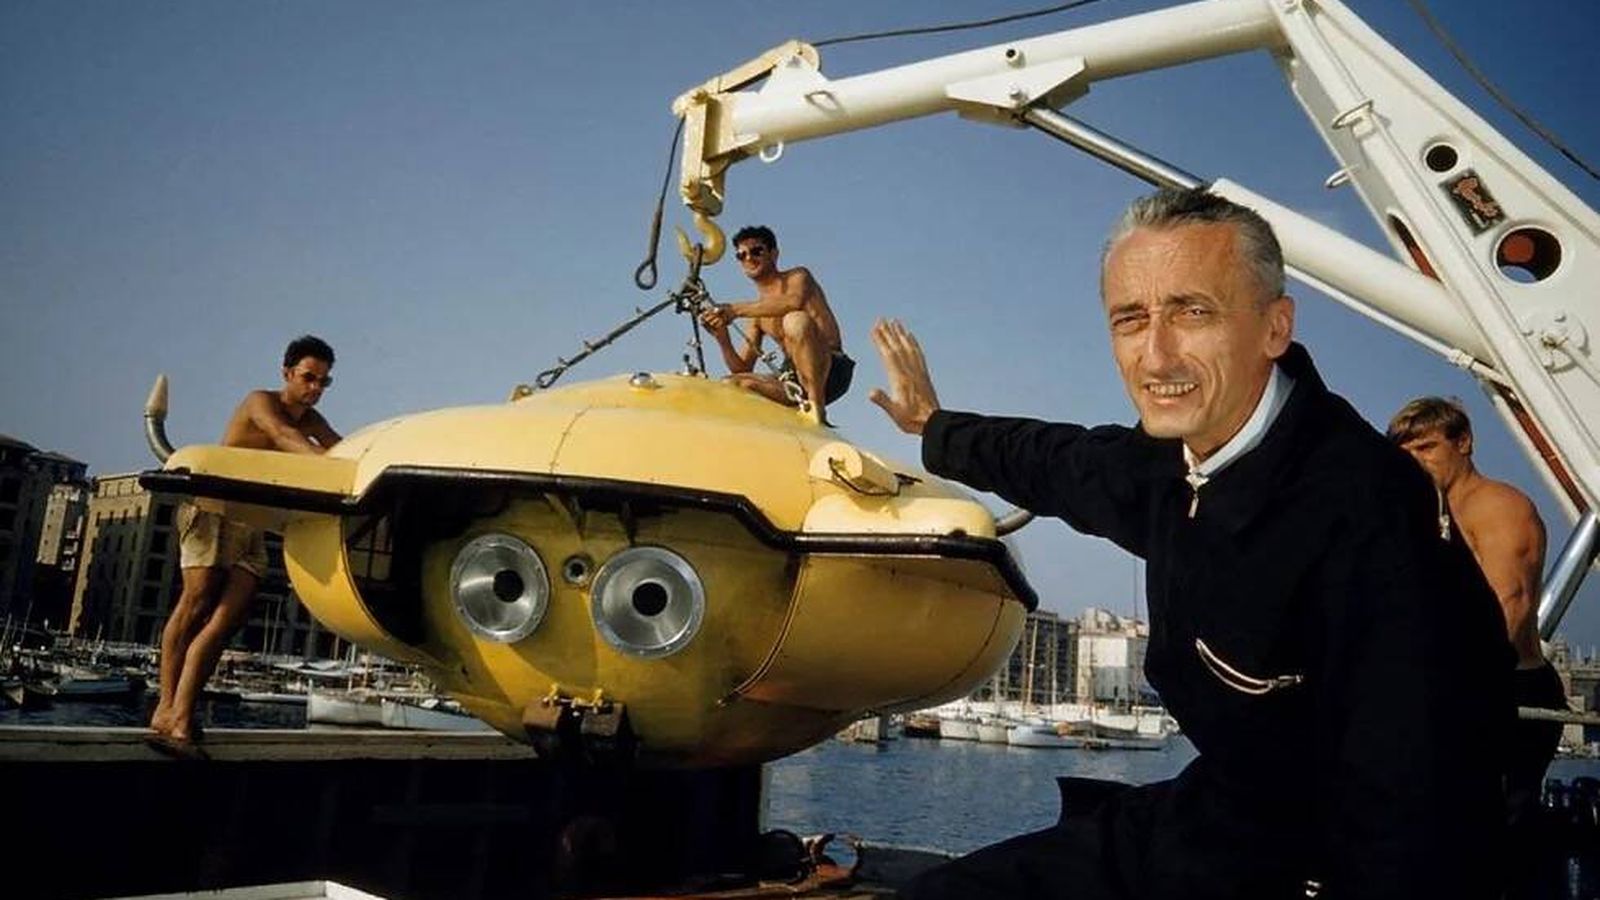 La tecnología de materiales ha permitido un cambio radical en la arquitectura de los minisubmarino. En la imagen, el mítico Cousteau con el submarino del Calypso, equipado con minúsculas ventanas.